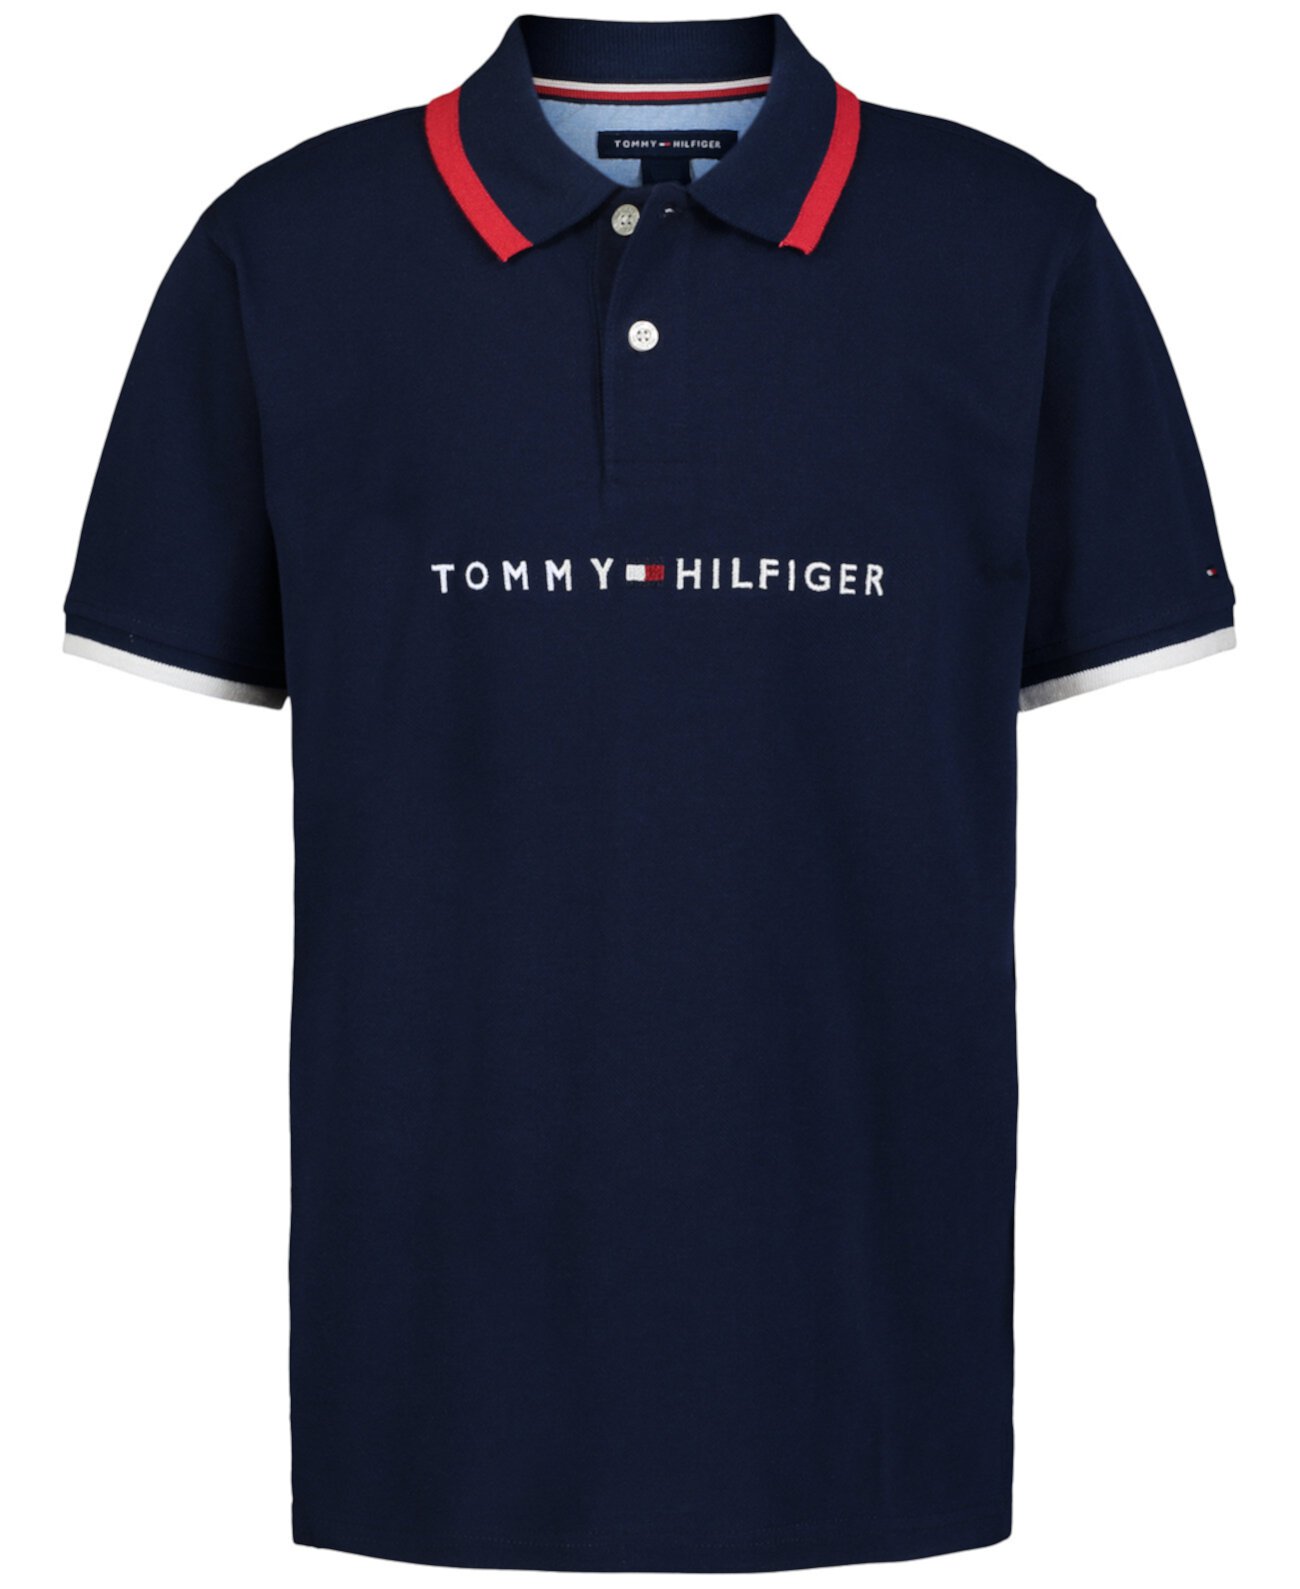 Поло рубашка Tommy Hilfiger для мальчиков Tomas с вышитым логотипом Tommy Hilfiger